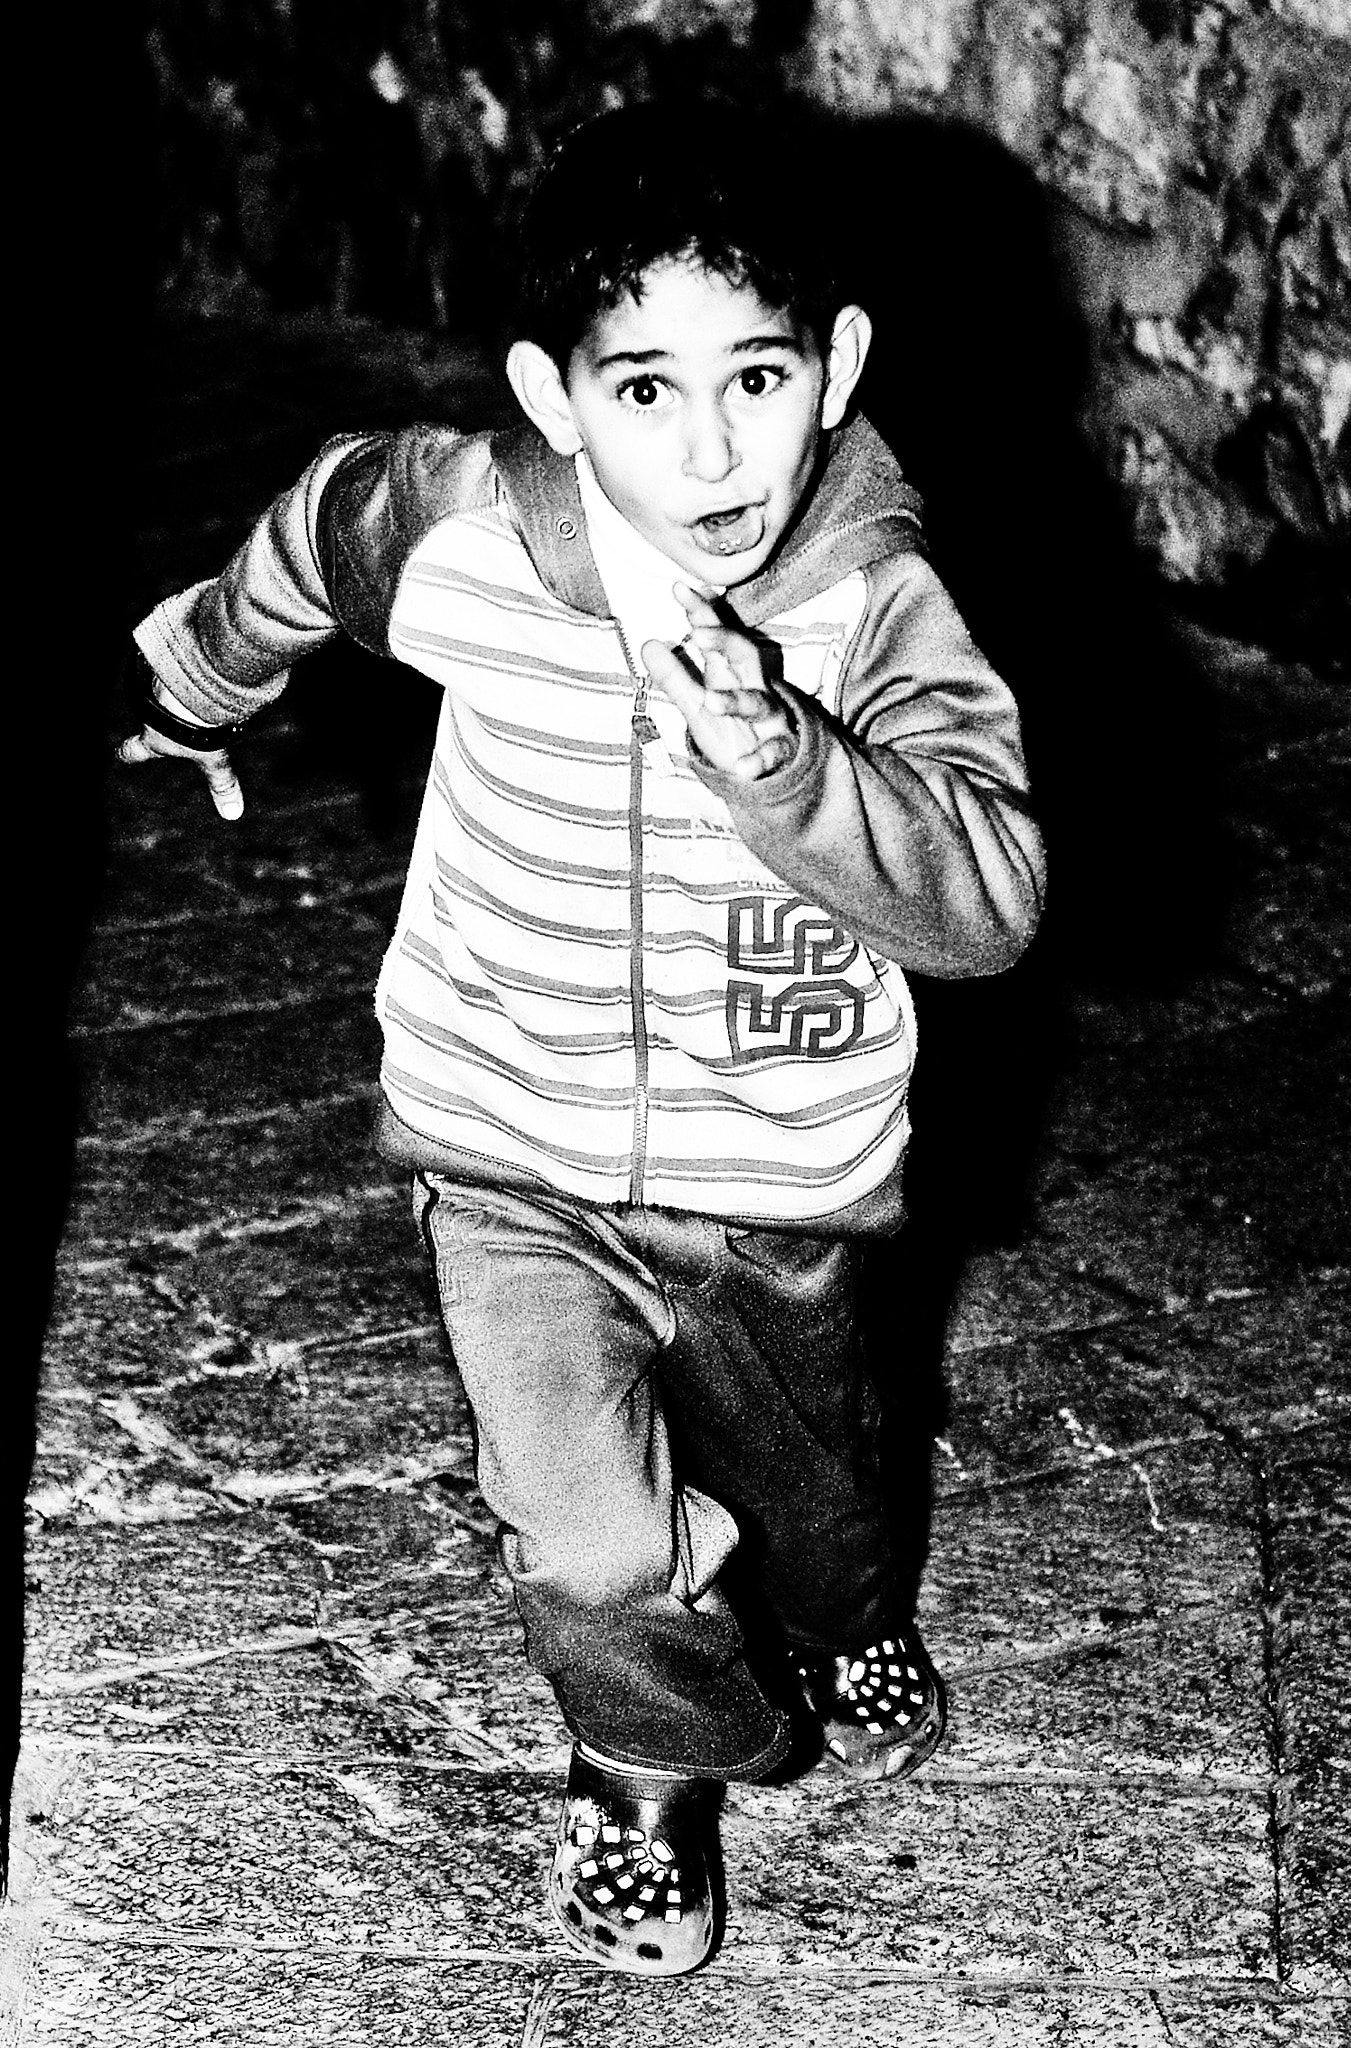 Pentax smc FA 43mm F1.9 Limited sample photo. Jerusalem boy photography